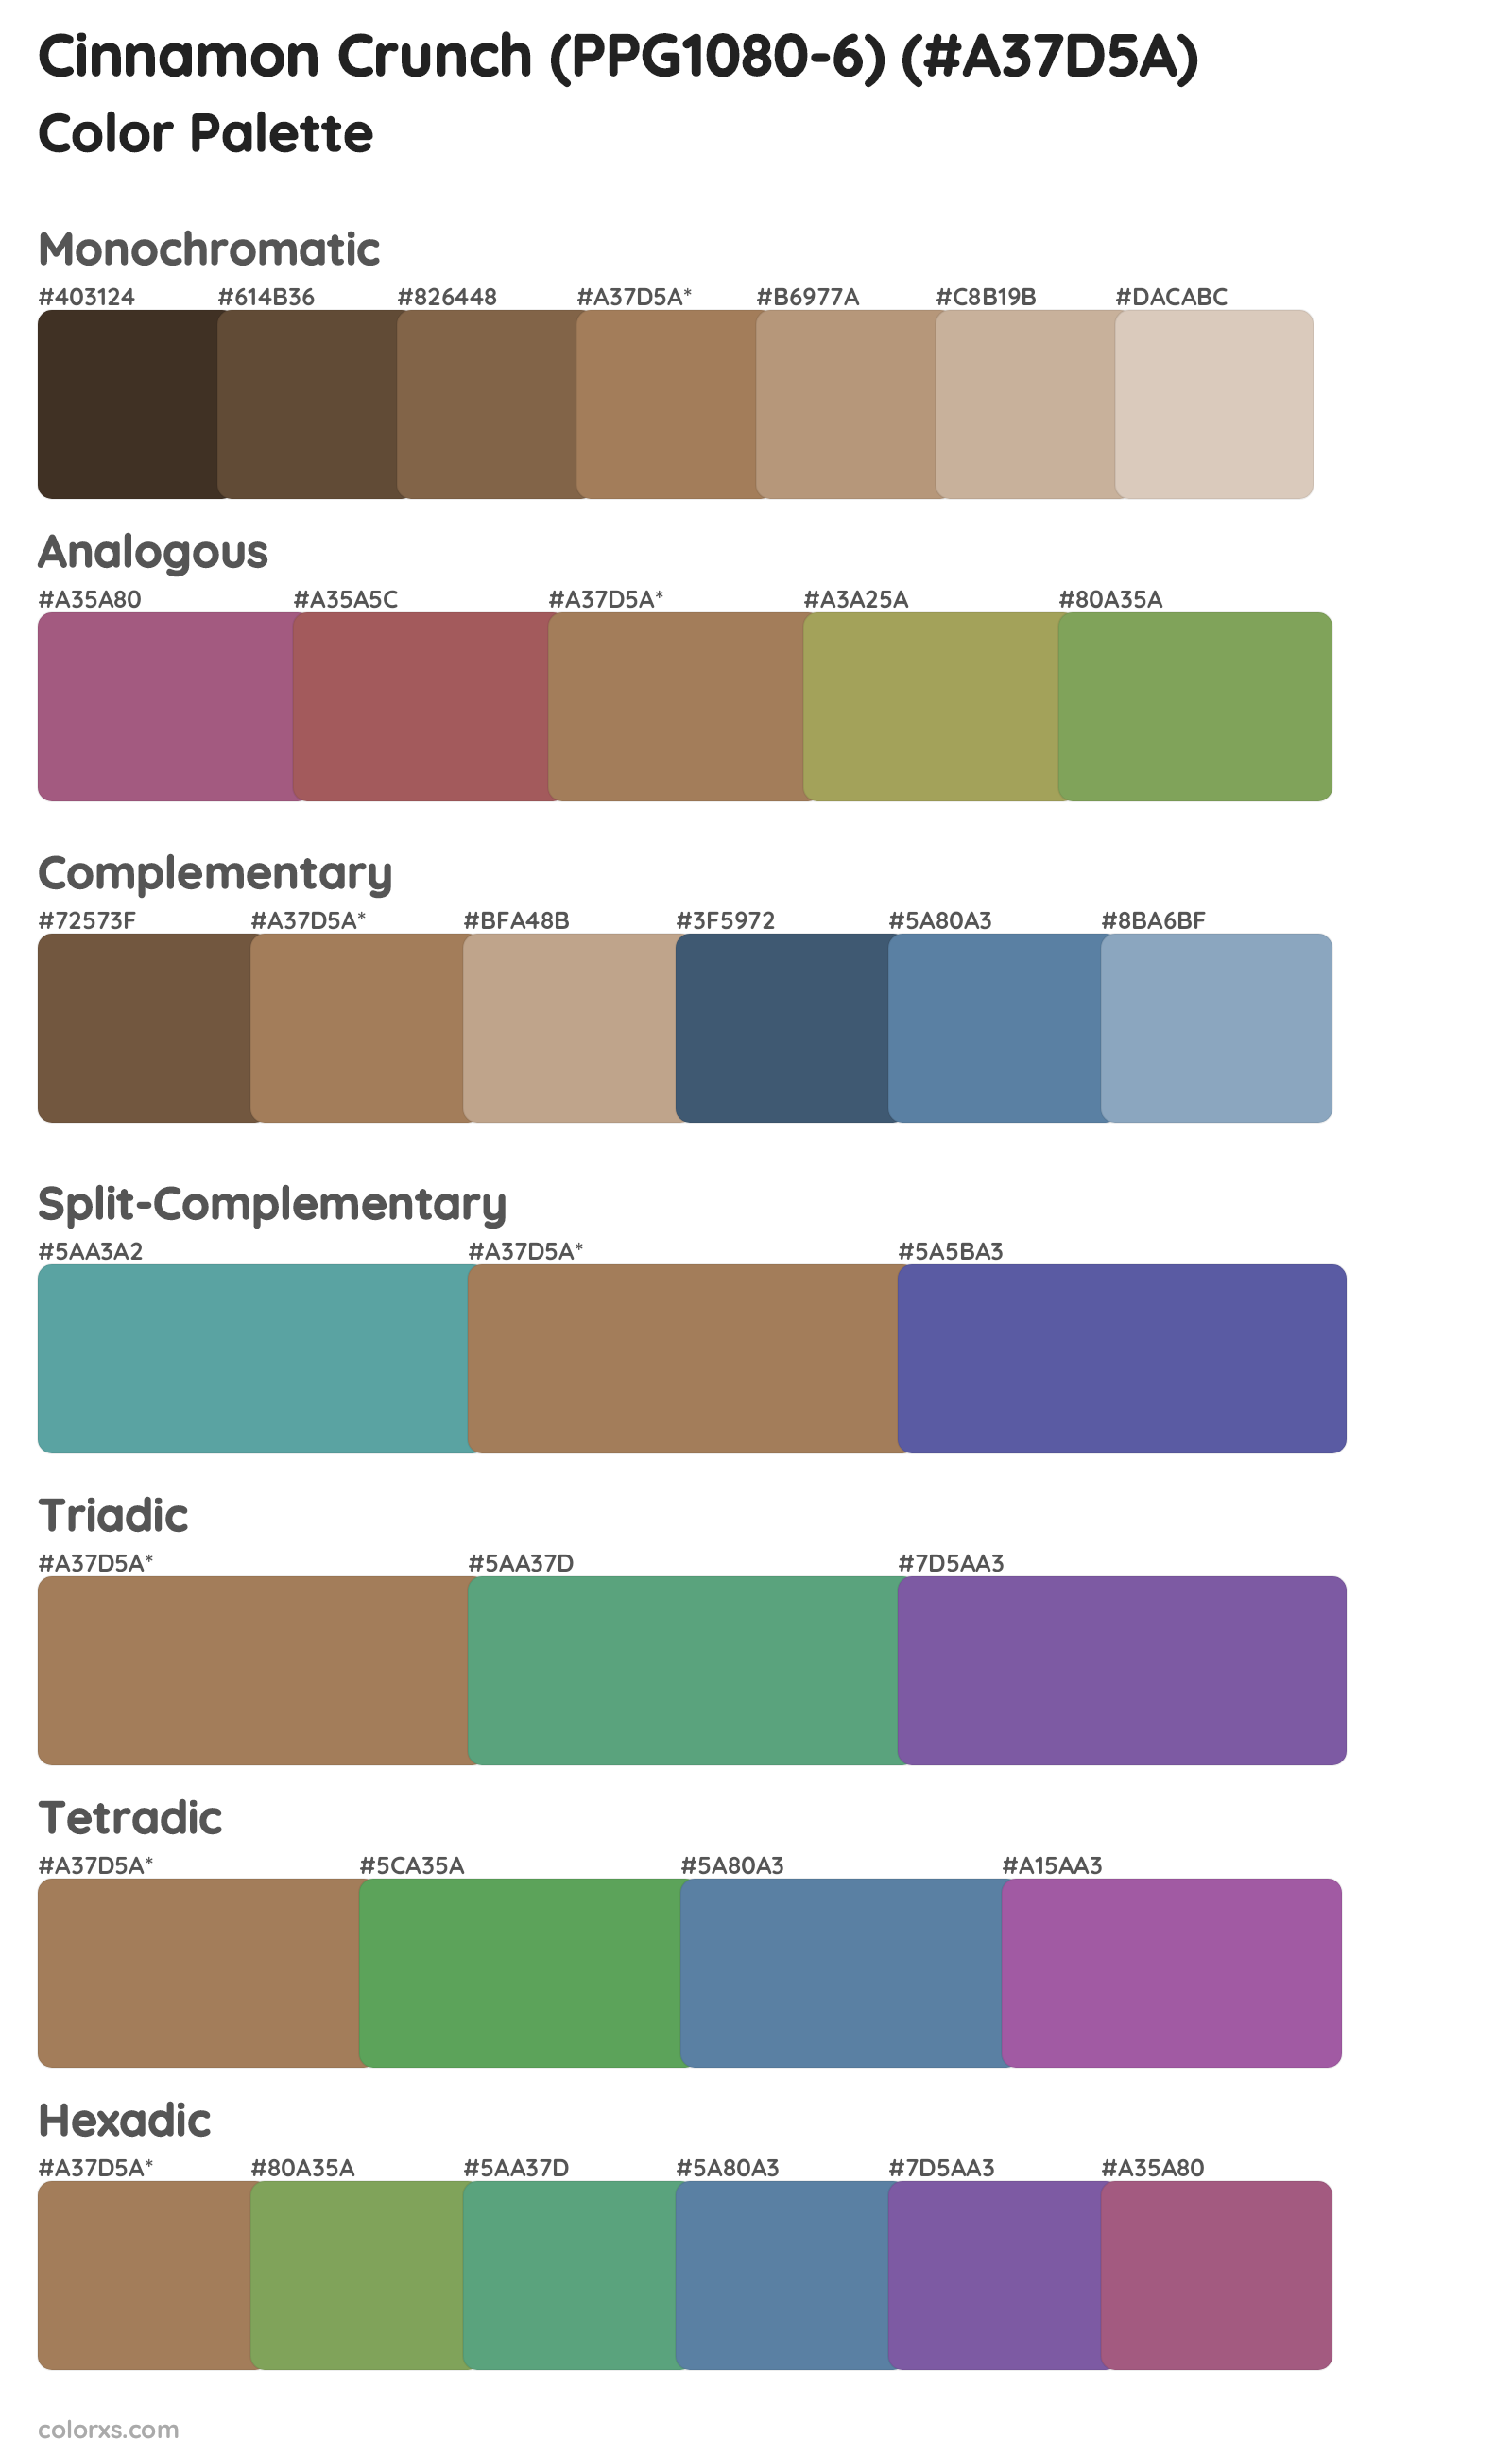 Cinnamon Crunch (PPG1080-6) Color Scheme Palettes